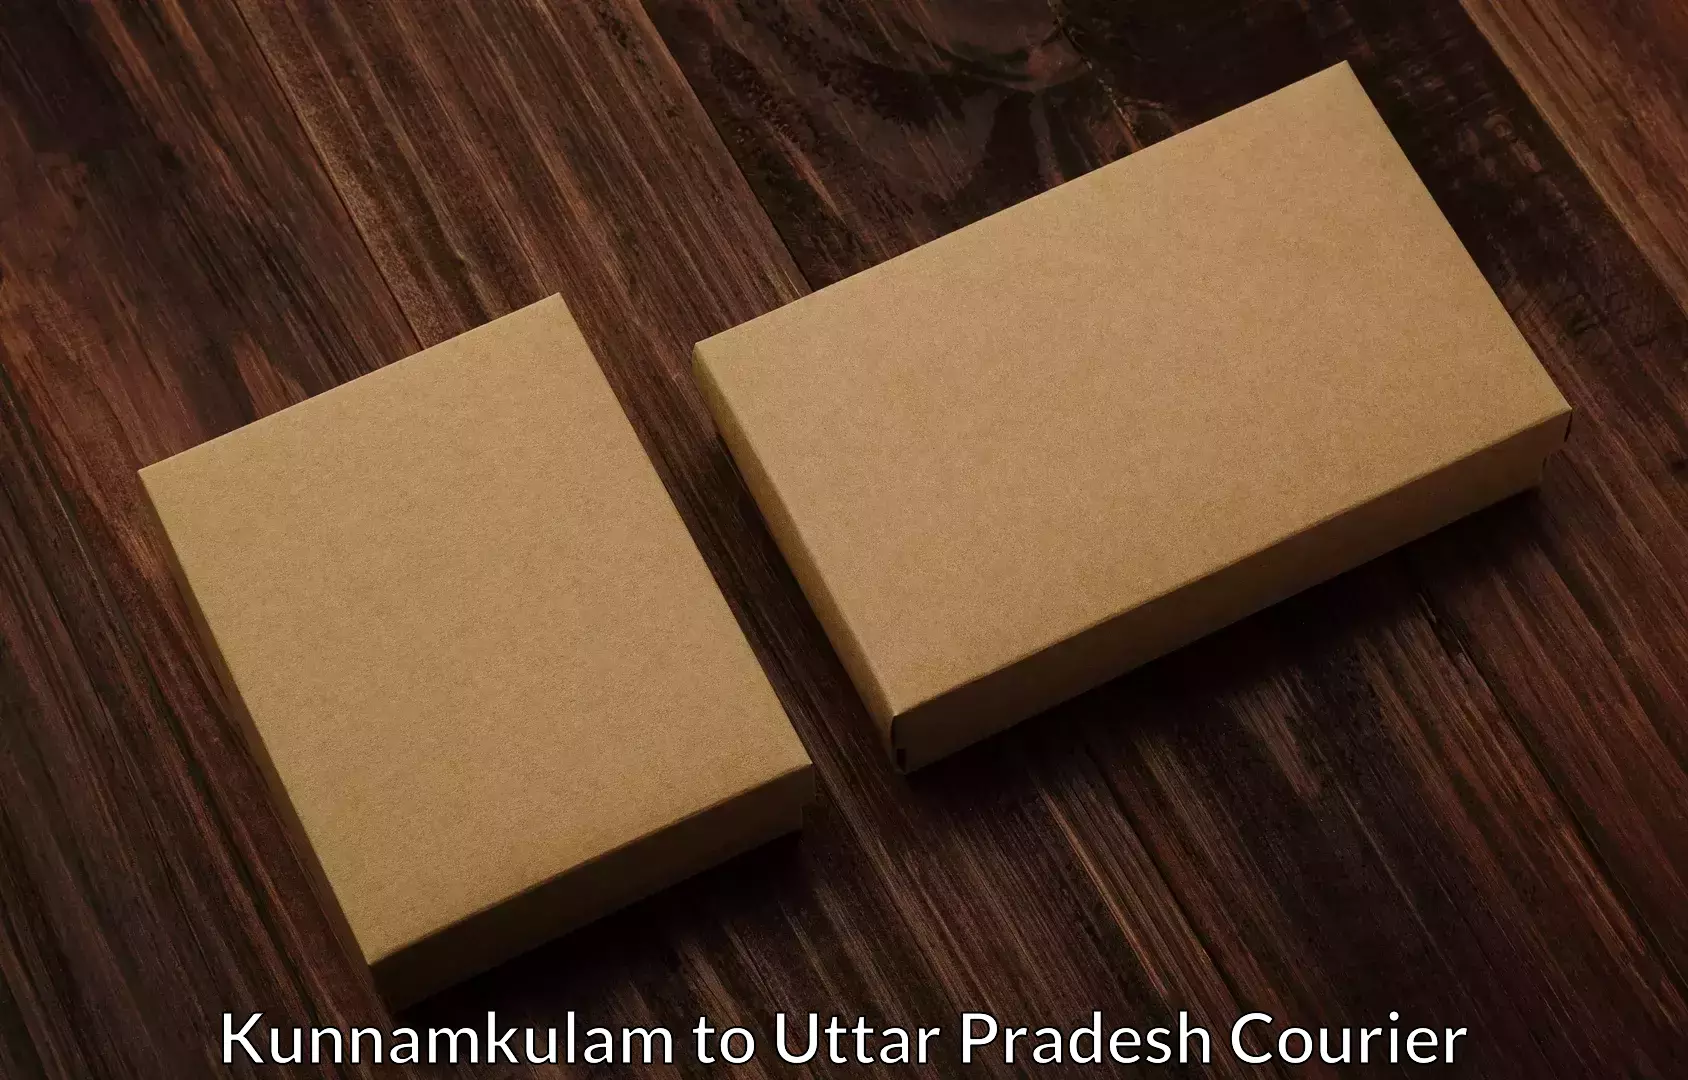 Furniture moving specialists Kunnamkulam to IIT Varanasi